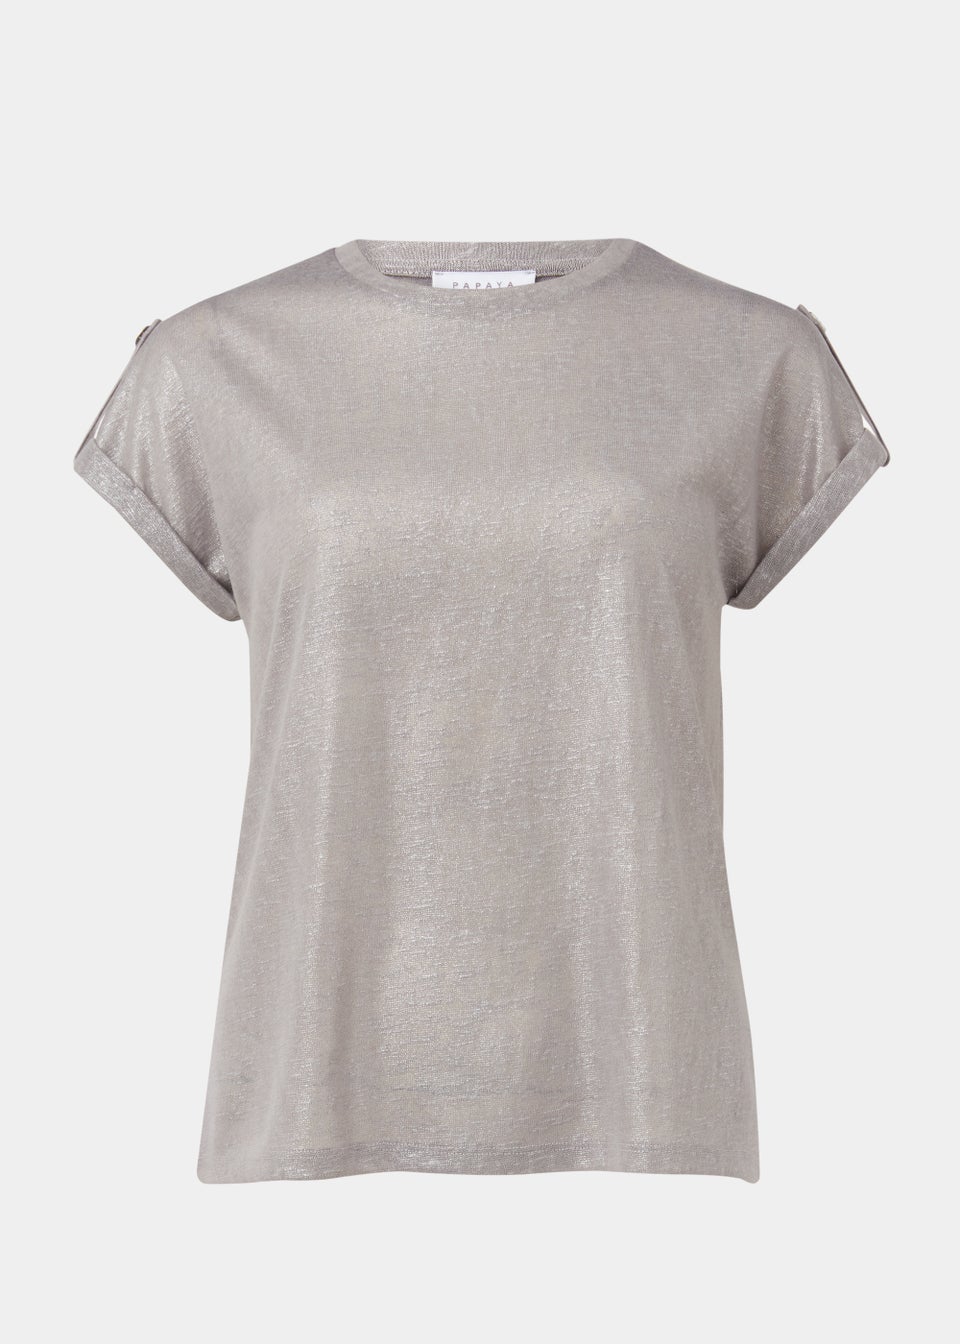 Grey Metallic T-Shirt - Matalan